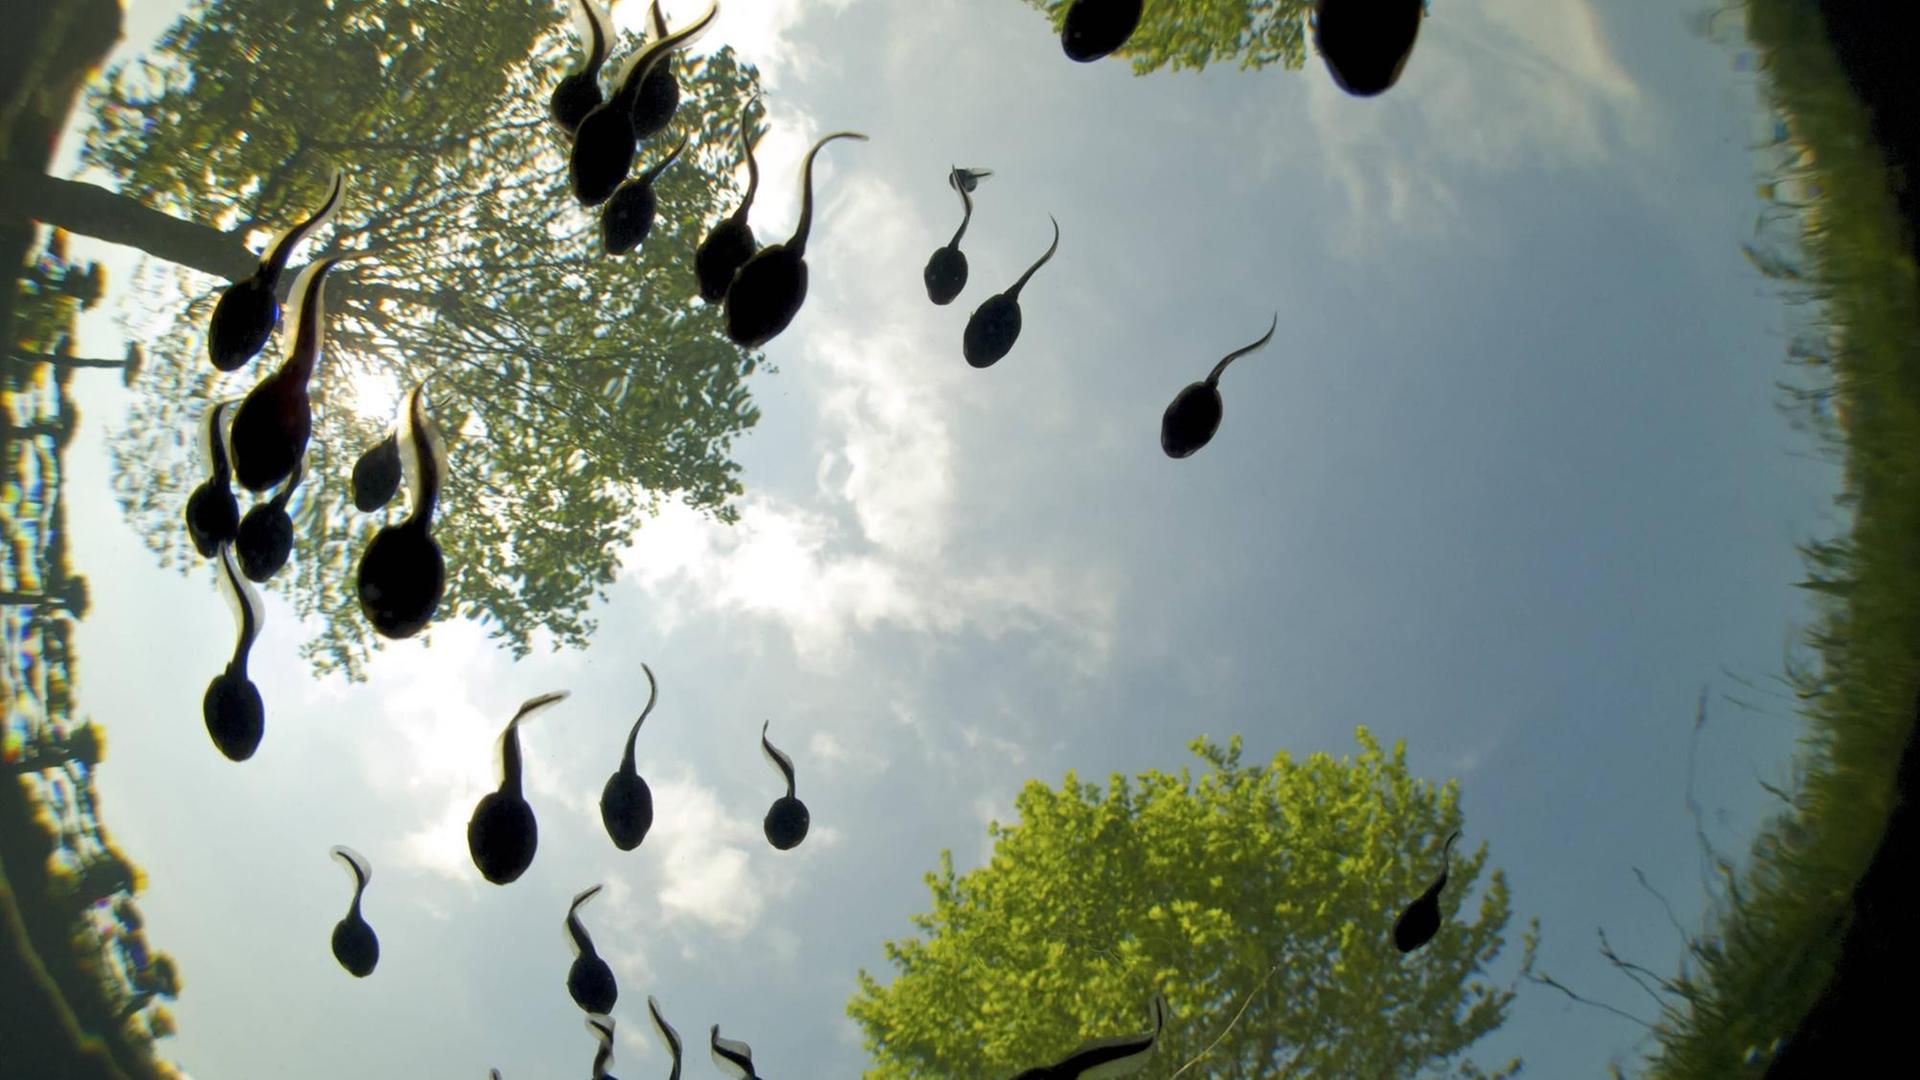 Kröten-Kaulquappen schwimmen in einem runden Teich